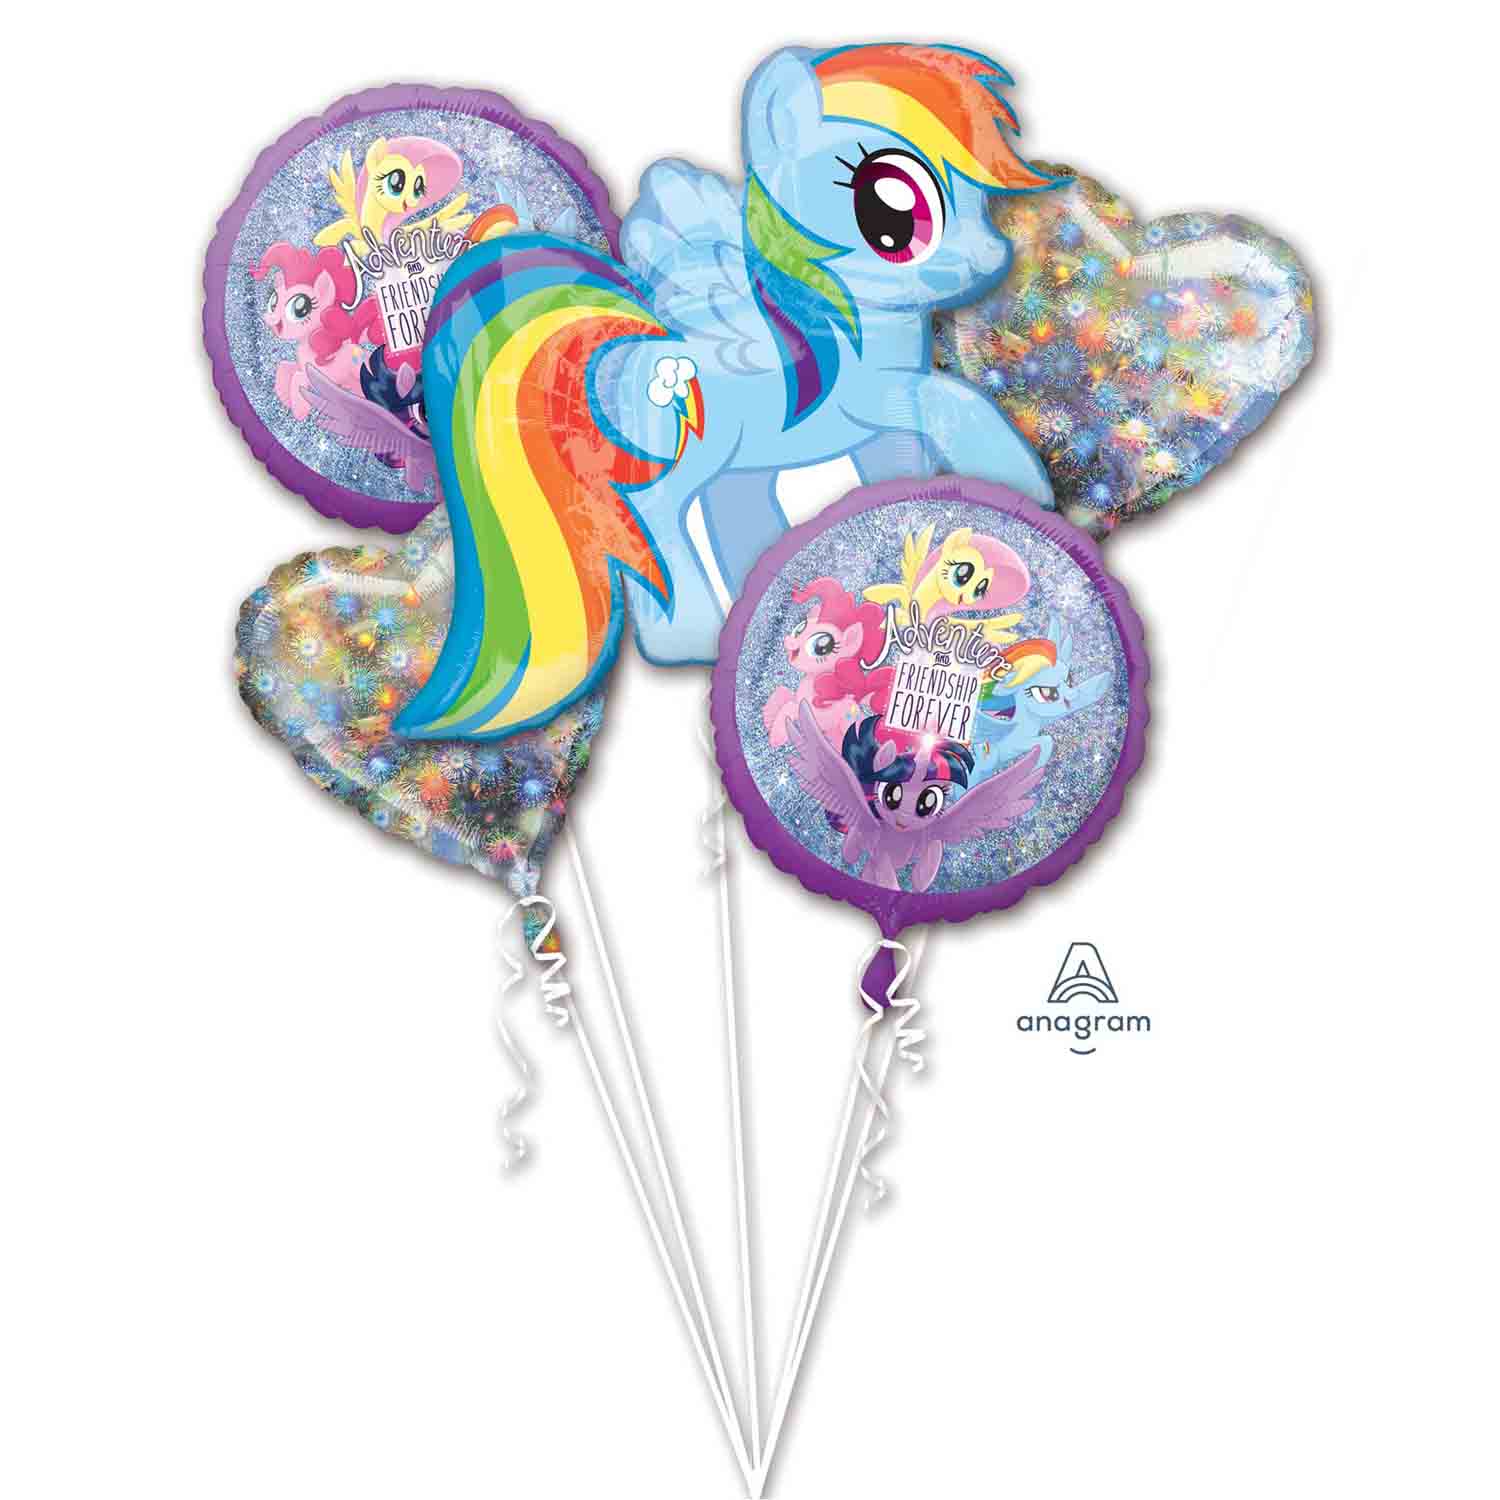 My Little Pony Friendship Adventures Foil Balloon Bouquet - 5 Pack Default Title